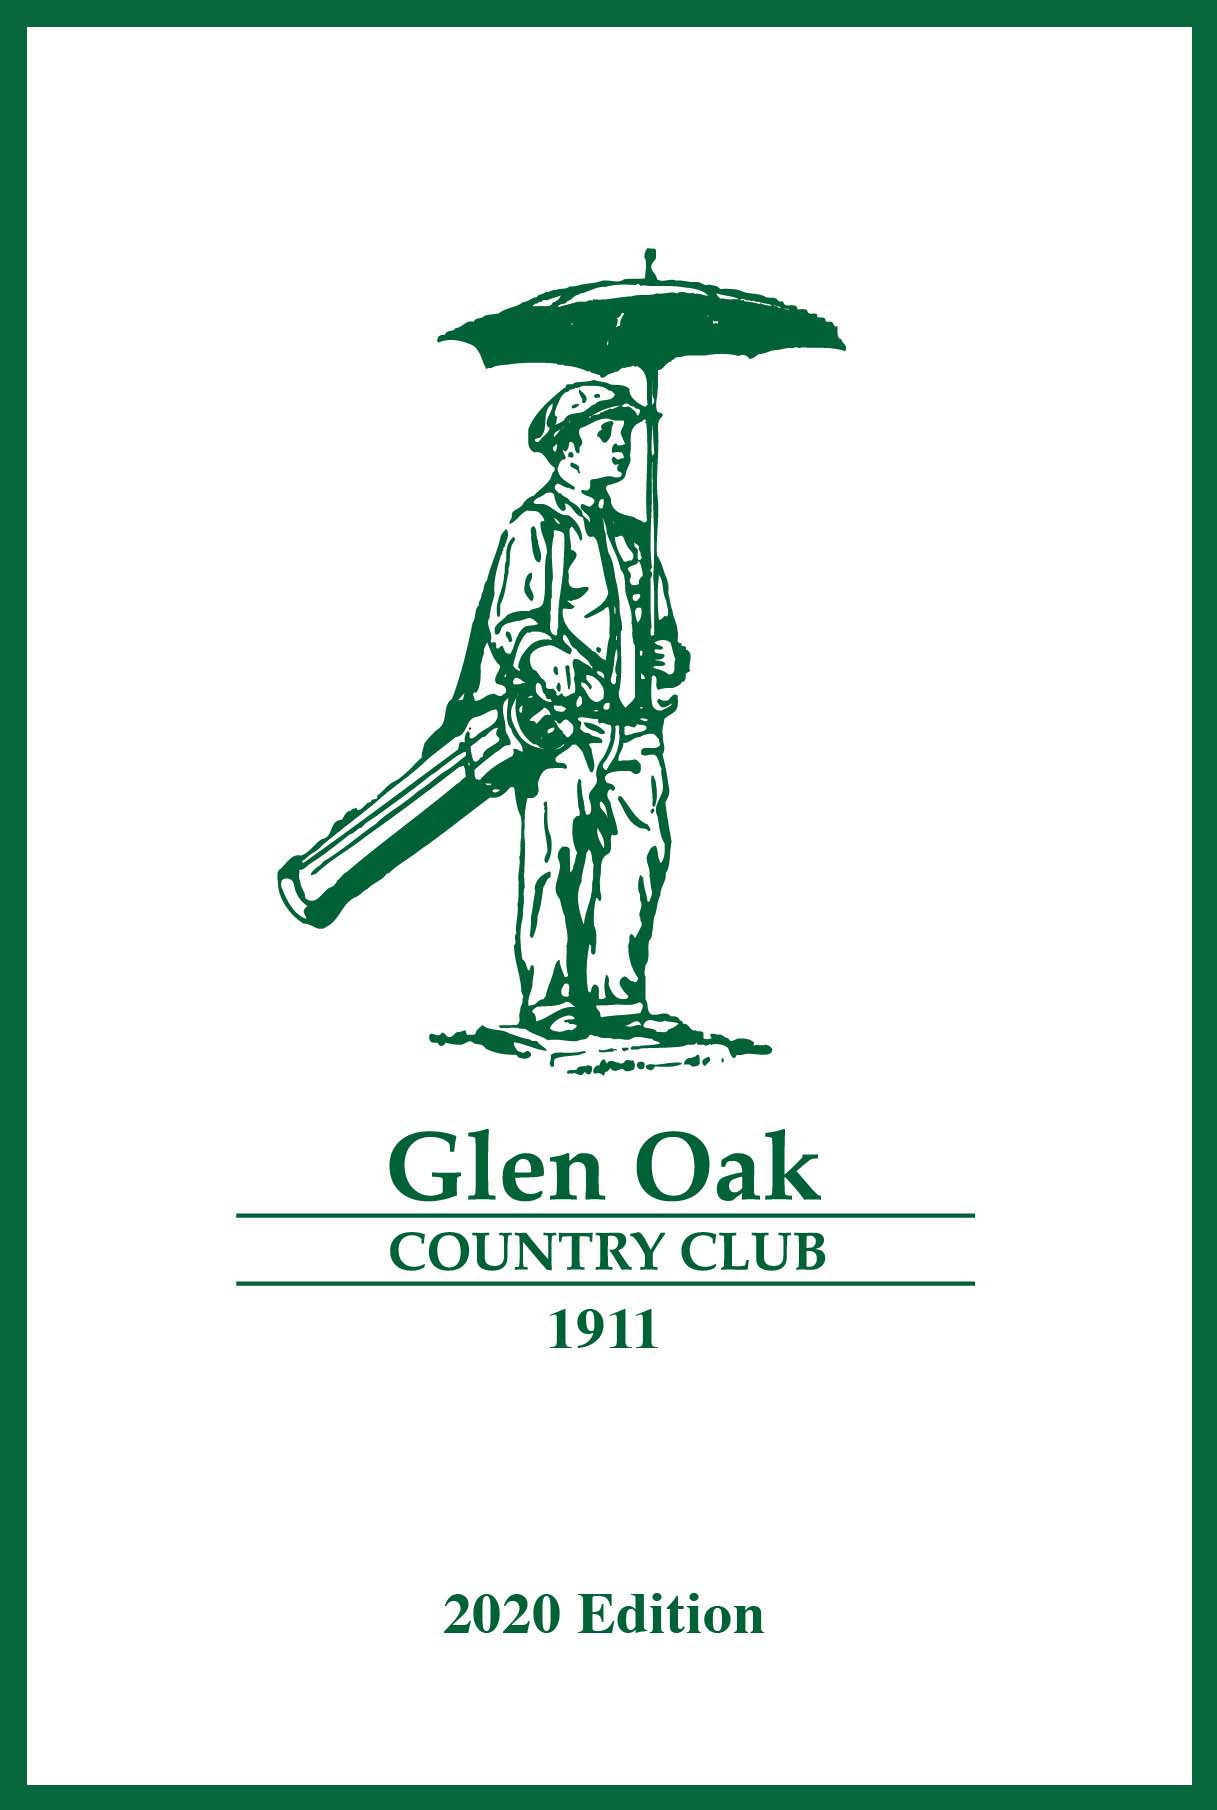 Glen oak CC